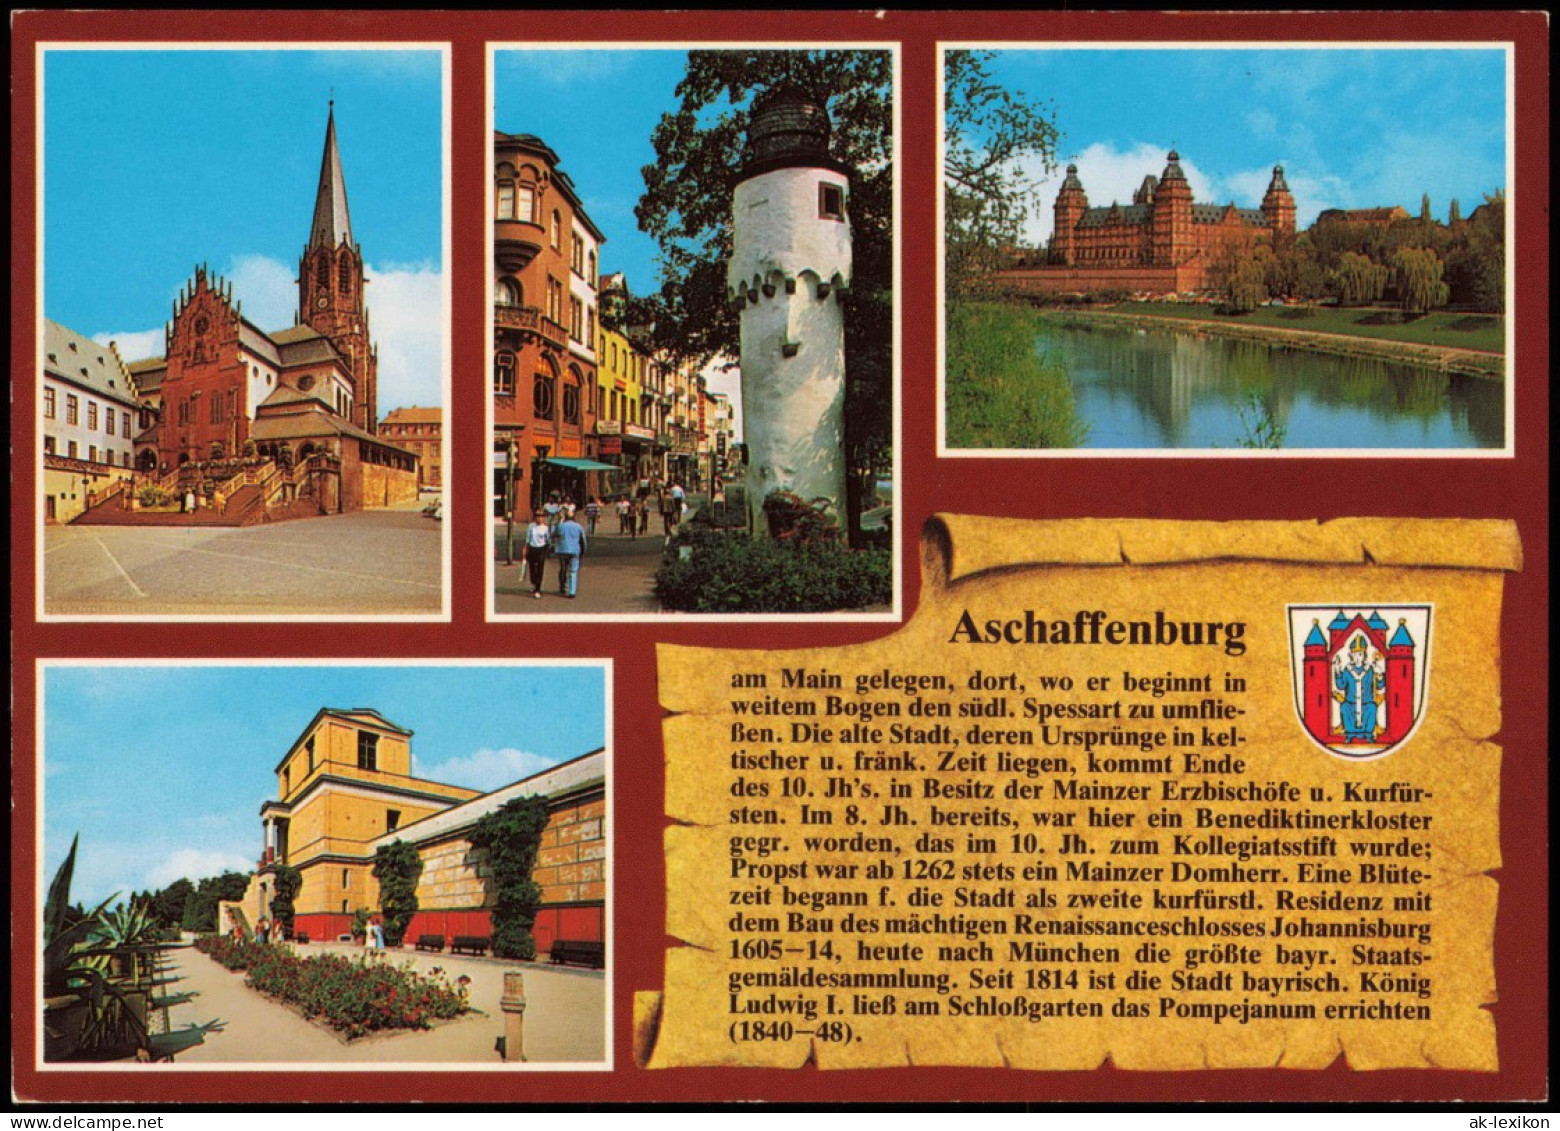 Ansichtskarte Aschaffenburg Stadtteilansichten - Chronikkarte 1991 - Aschaffenburg